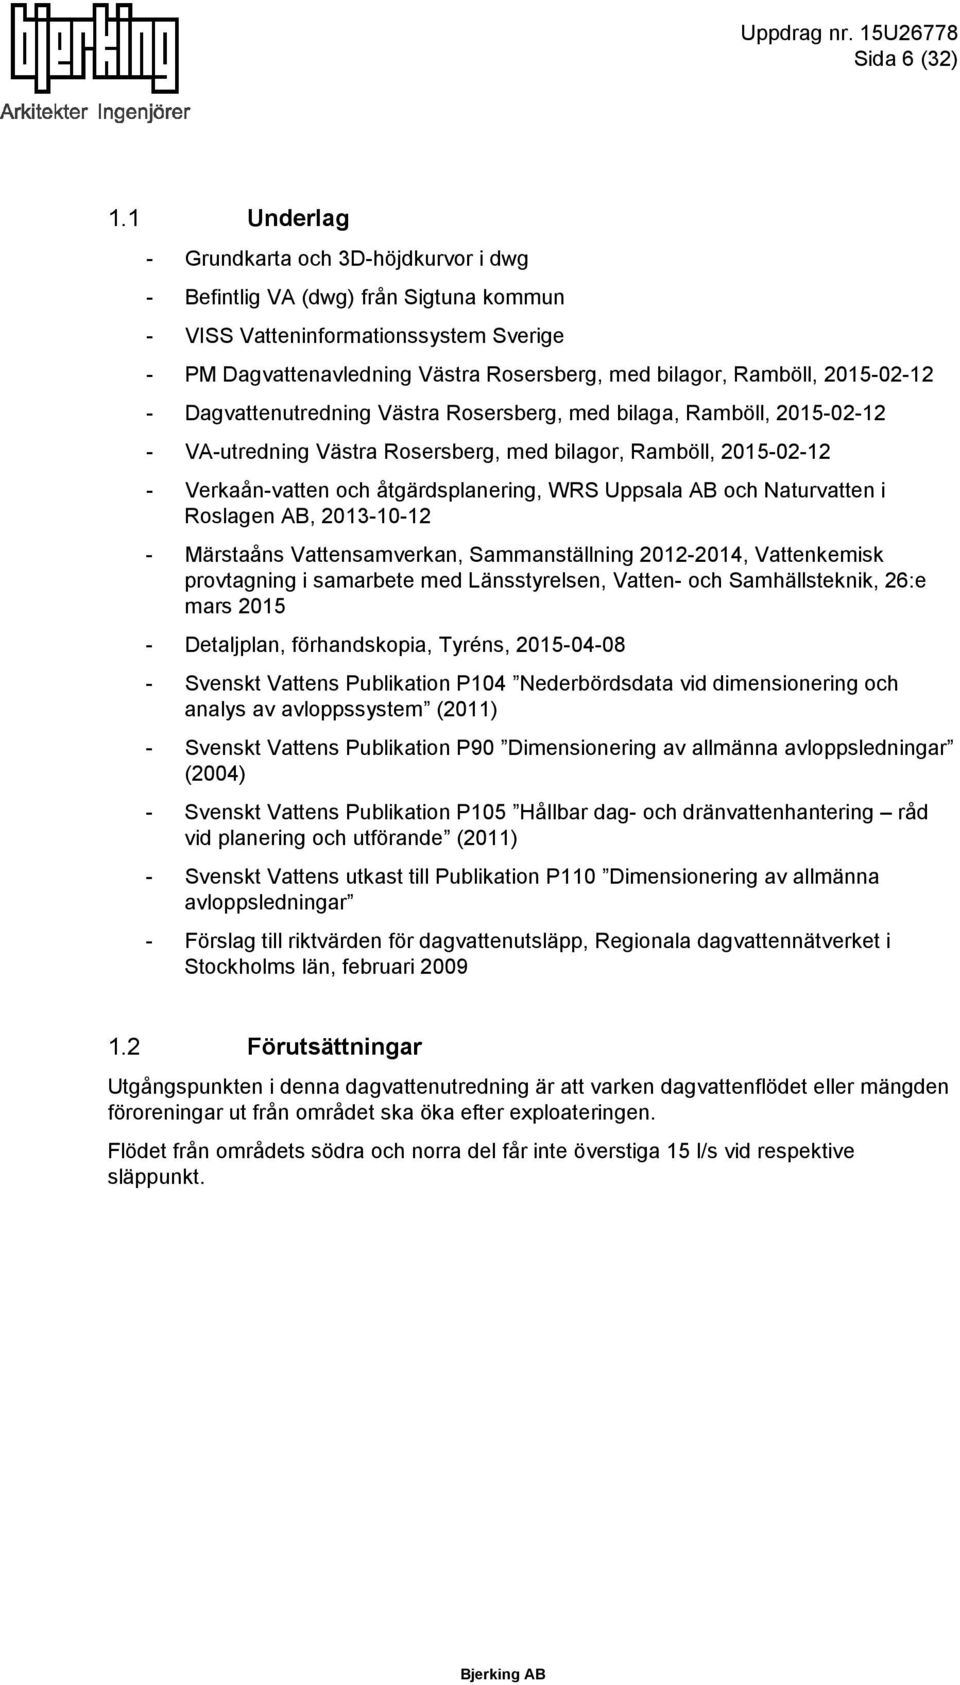 2015-02-12 - Dagvattenutredning Västra Rosersberg, med bilaga, Ramböll, 2015-02-12 - VA-utredning Västra Rosersberg, med bilagor, Ramböll, 2015-02-12 - Verkaån-vatten och åtgärdsplanering, WRS